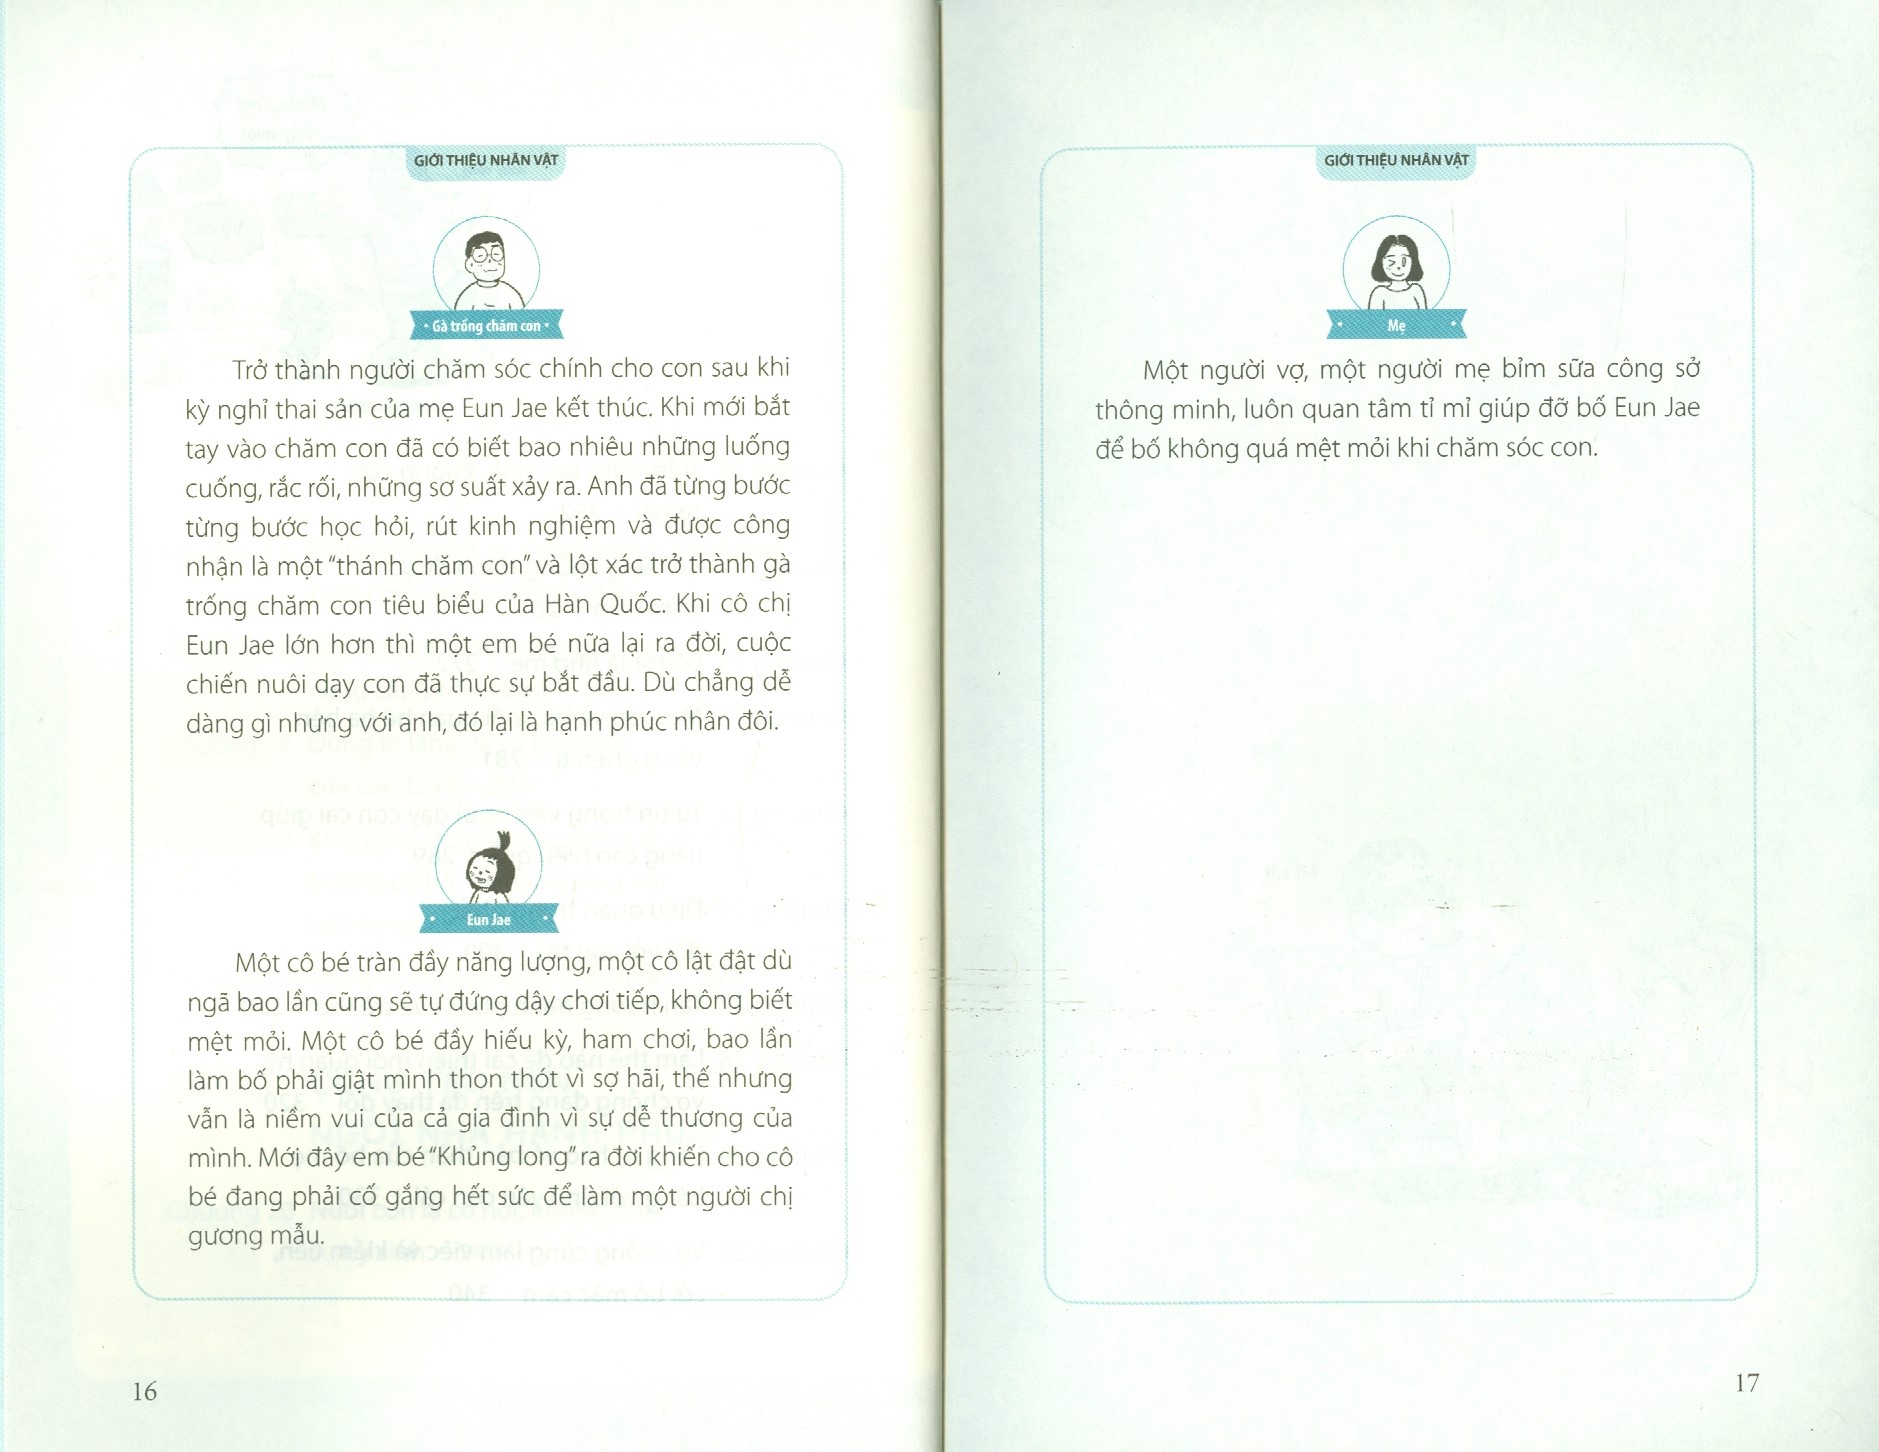 Bố Bỉm Sữa Nuôi Con Khác Biệt (Cuốn sách đạt bằng khen của Thủ tướng chính phủ Hàn Quốc và Bộ trưởng Bộ Bình đẳng giới và gia đình)